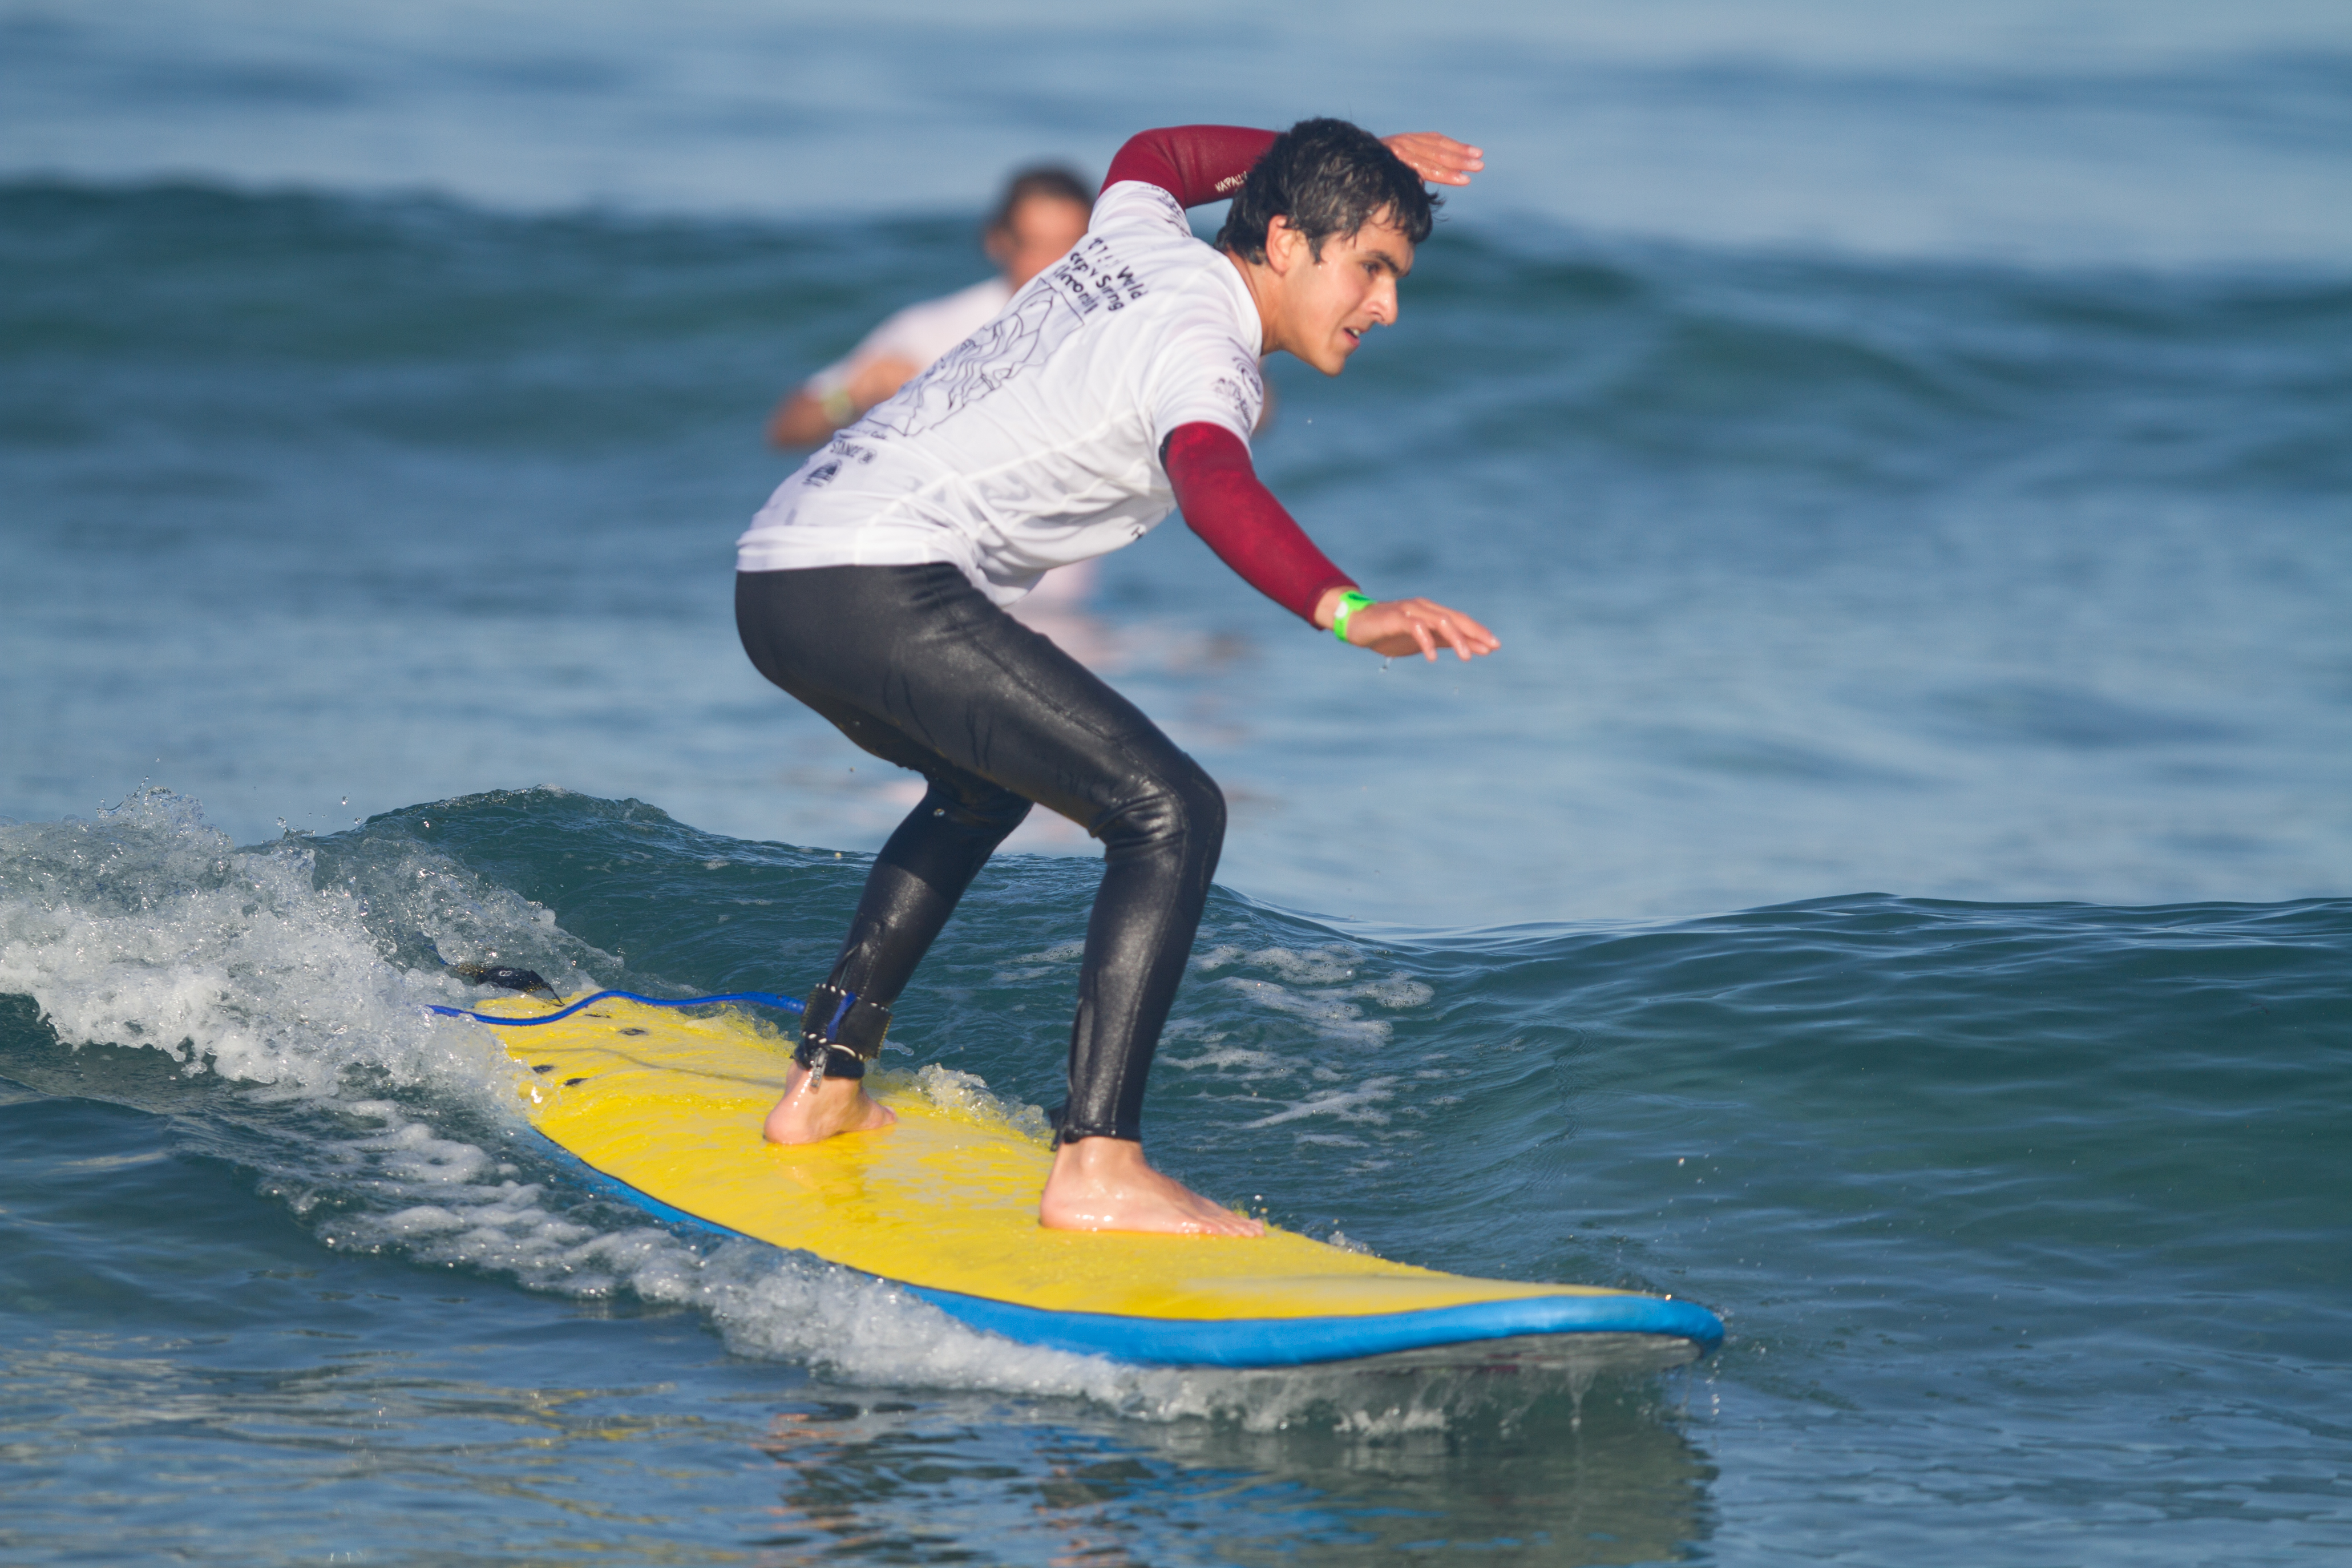 la increible historia del surfista ciego